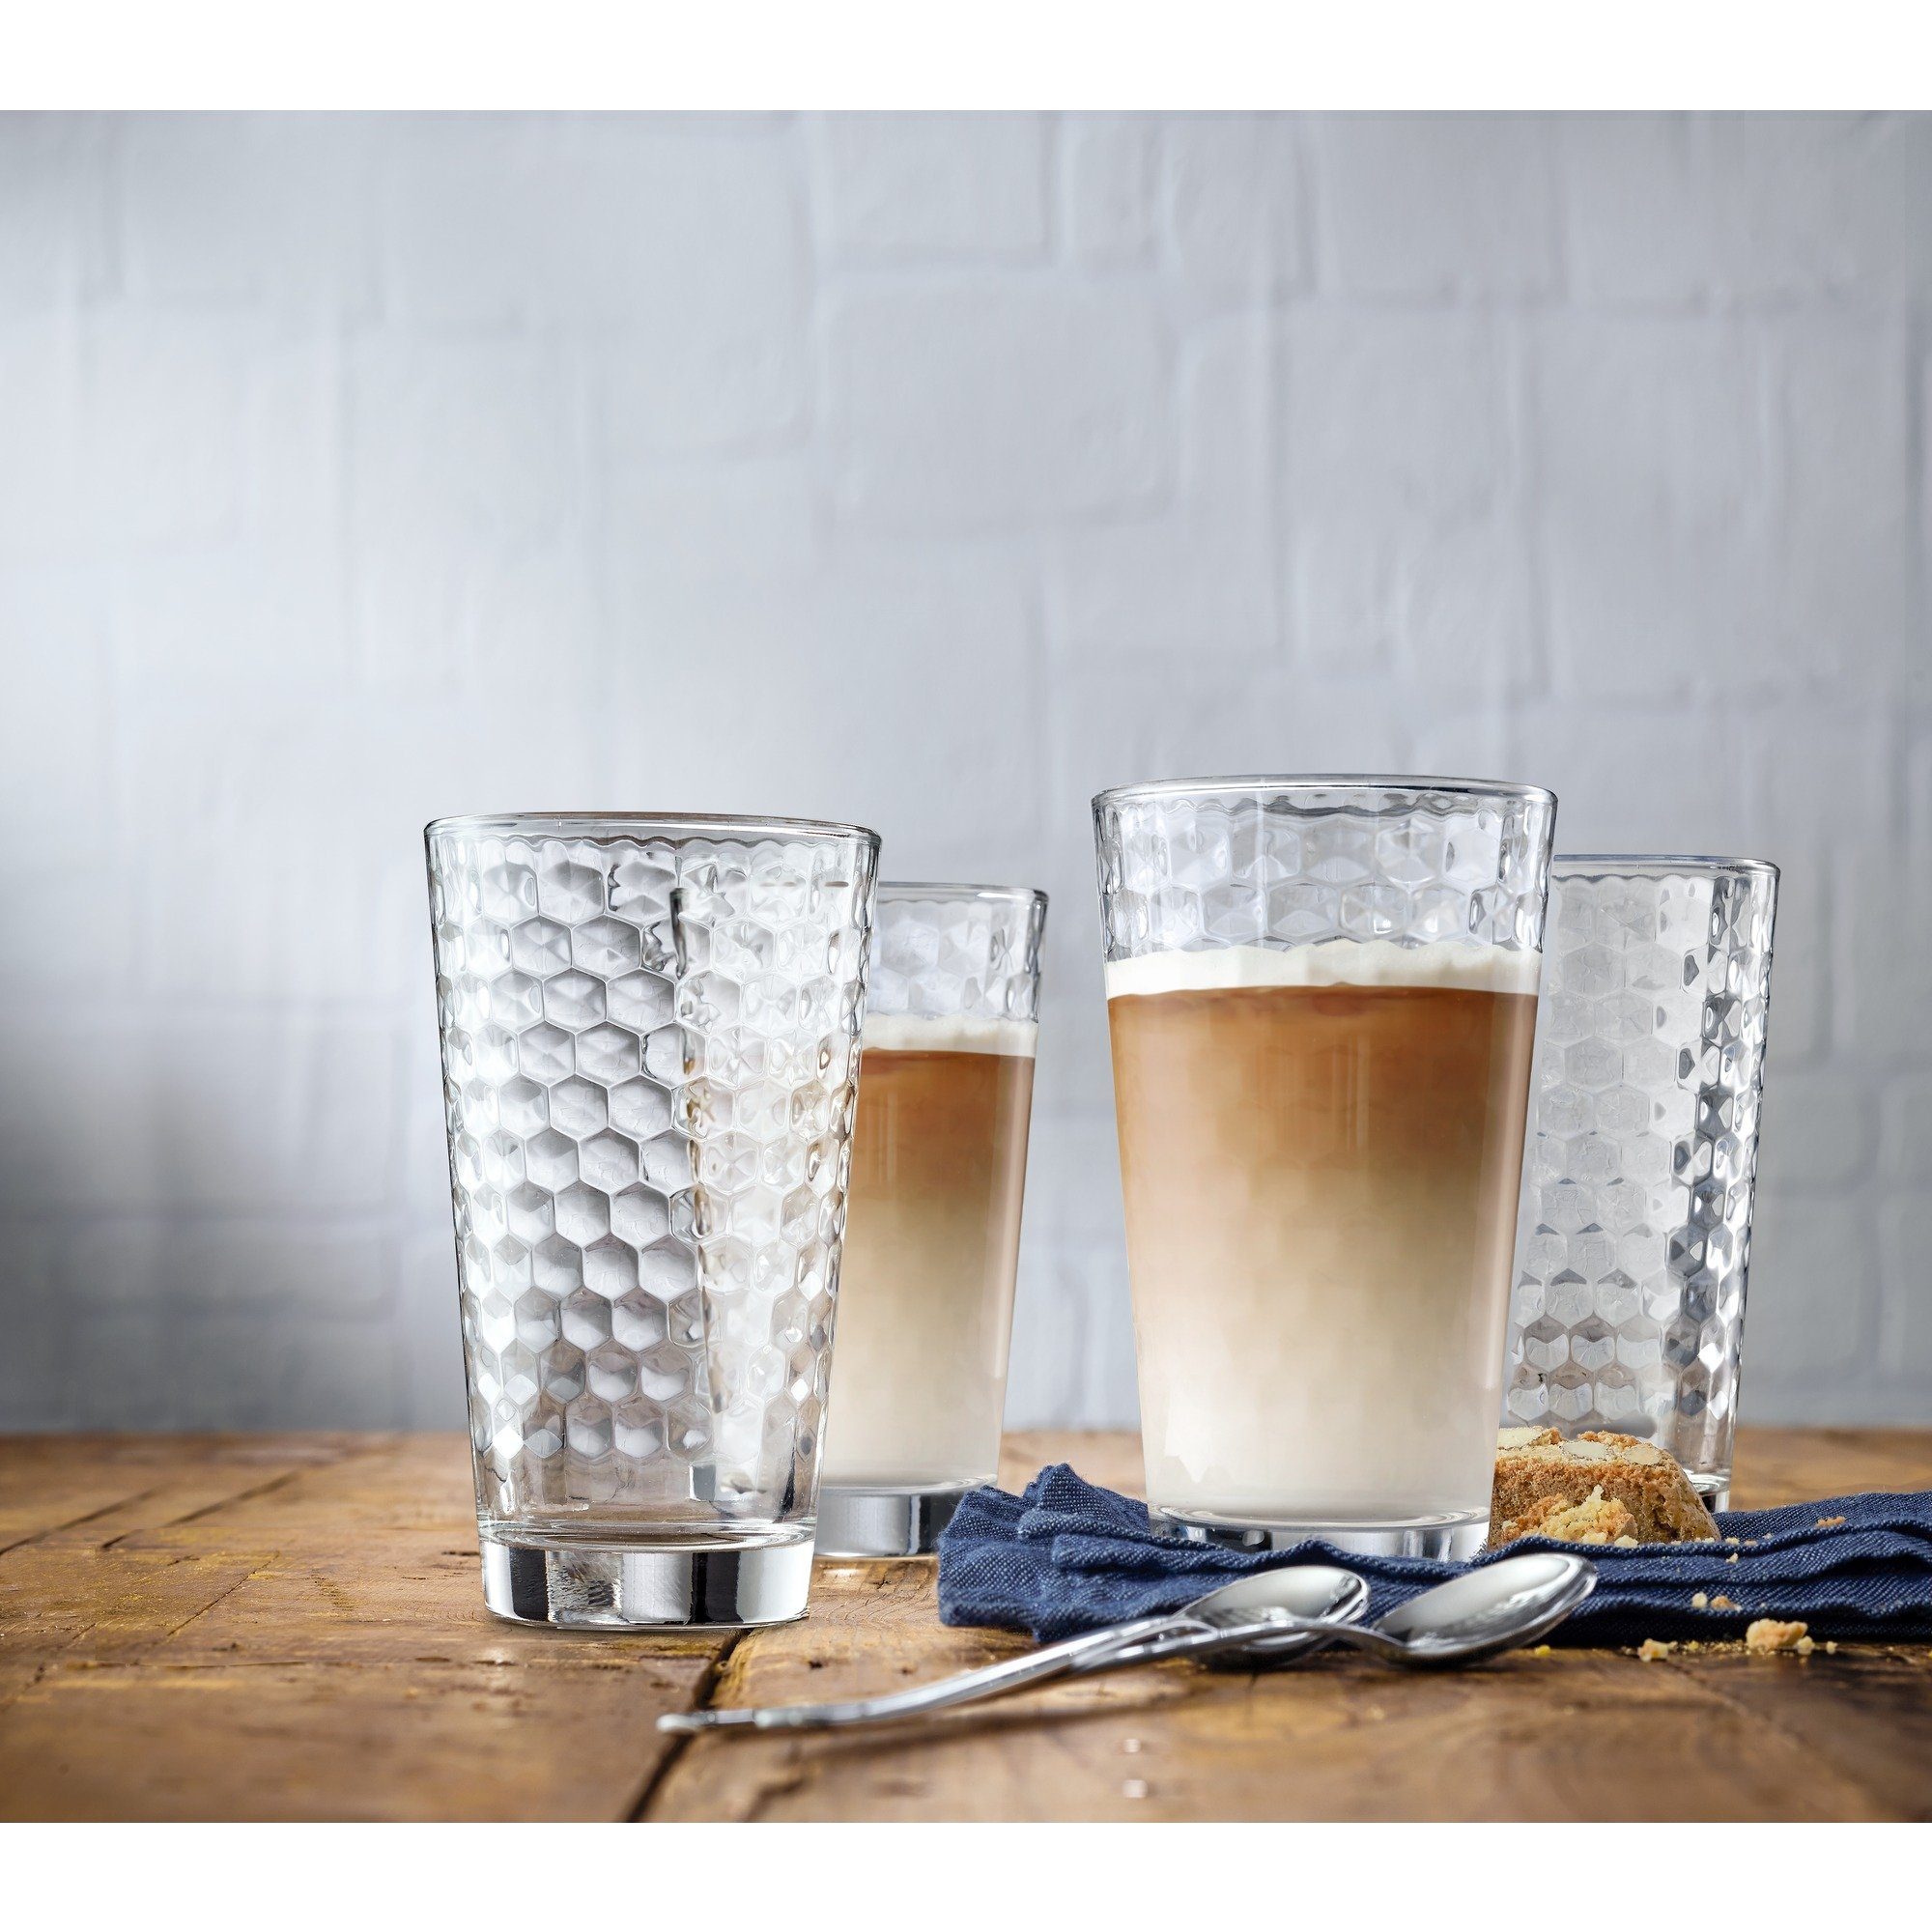 kern Orthodox wees gegroet WMF Glazenset CoffeeTime Hittebestendig glas, 4-delig (set, 4-delig)  makkelijk gevonden | OTTO